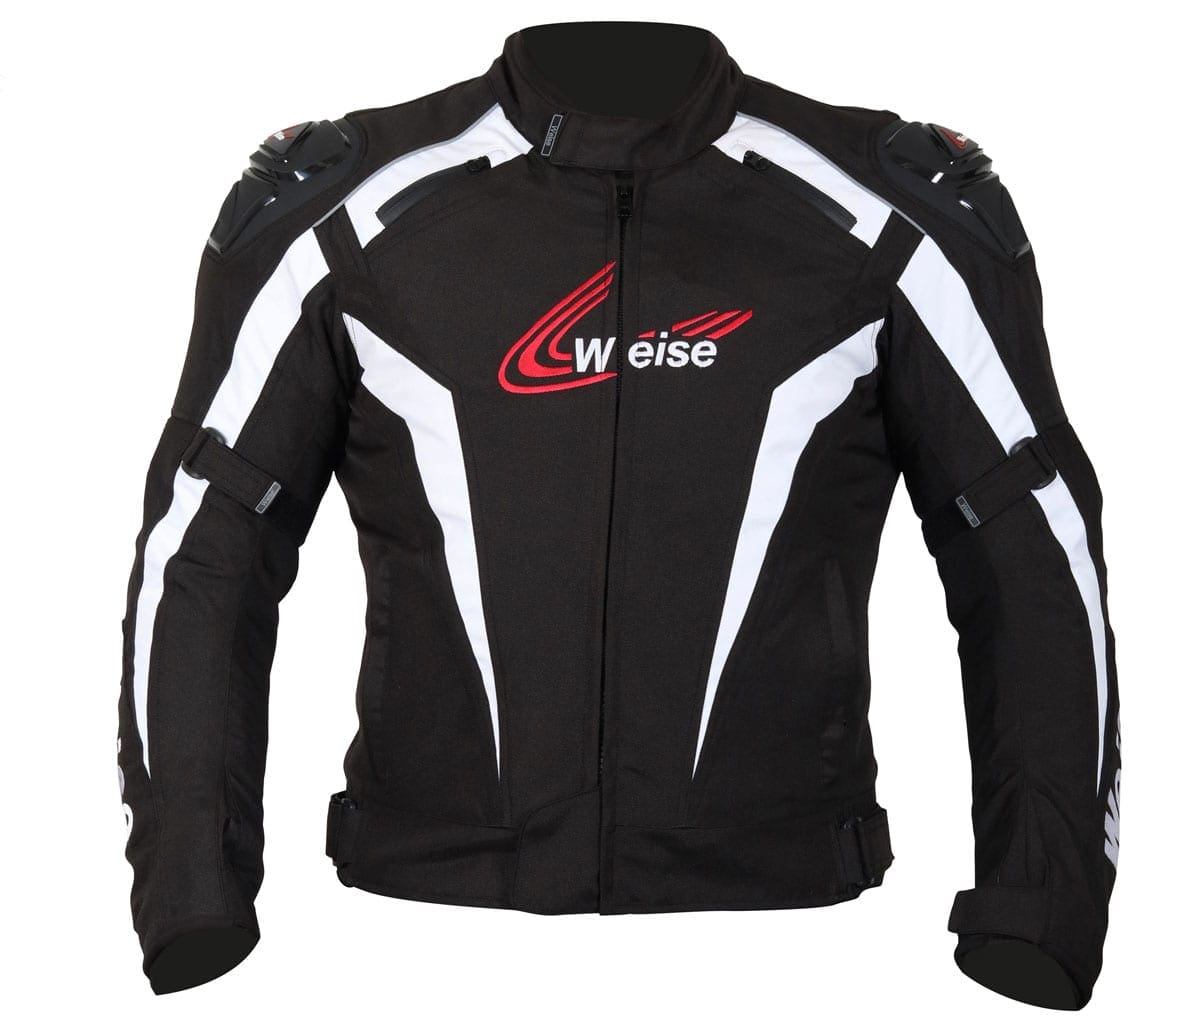 Win a Weise Ascari jacket worth ... - News - Classic Bike Hub